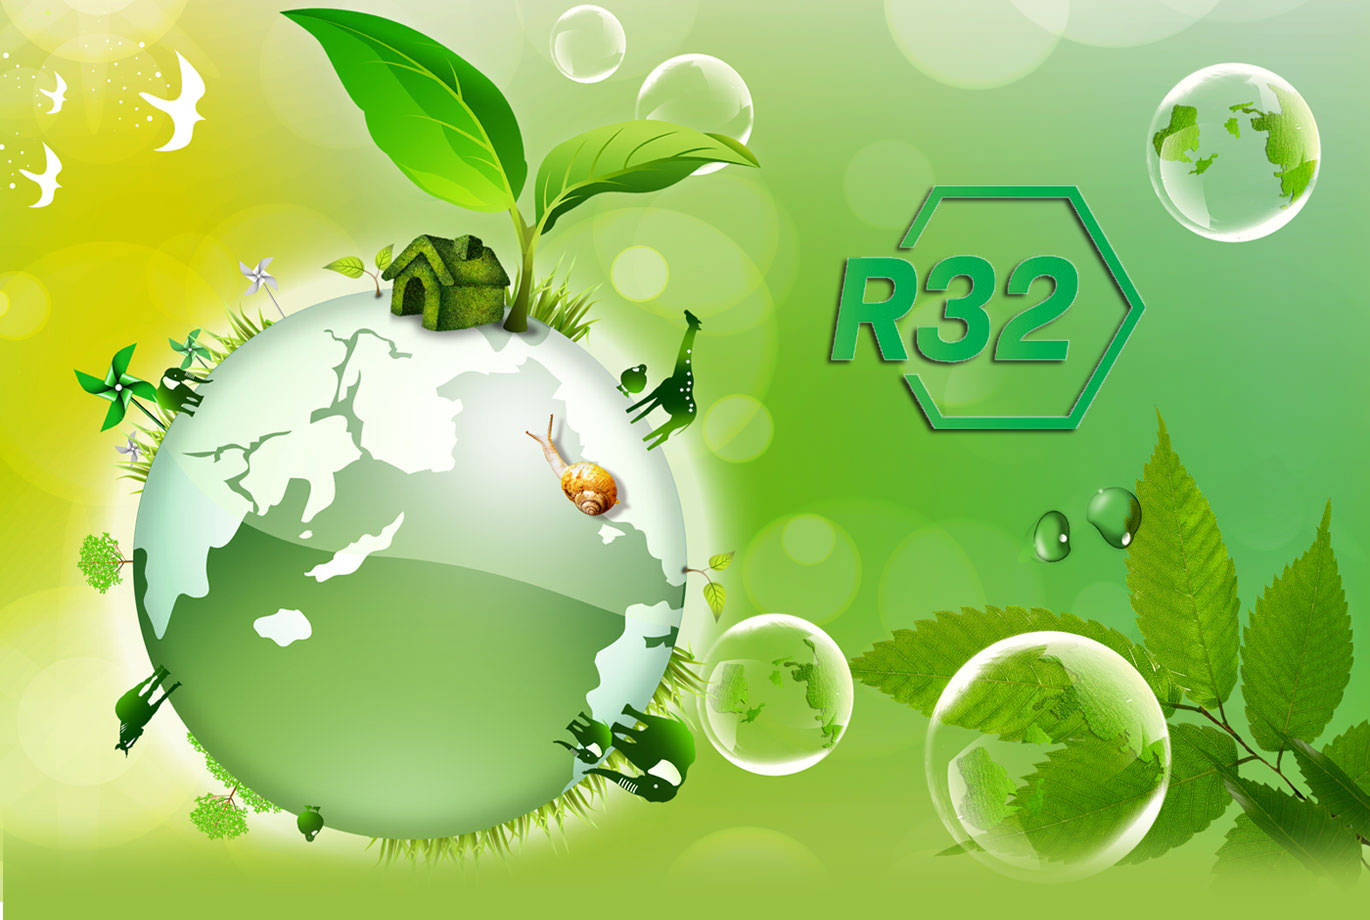 6. Môi chất lạnh R32 thân thiện với môi trường